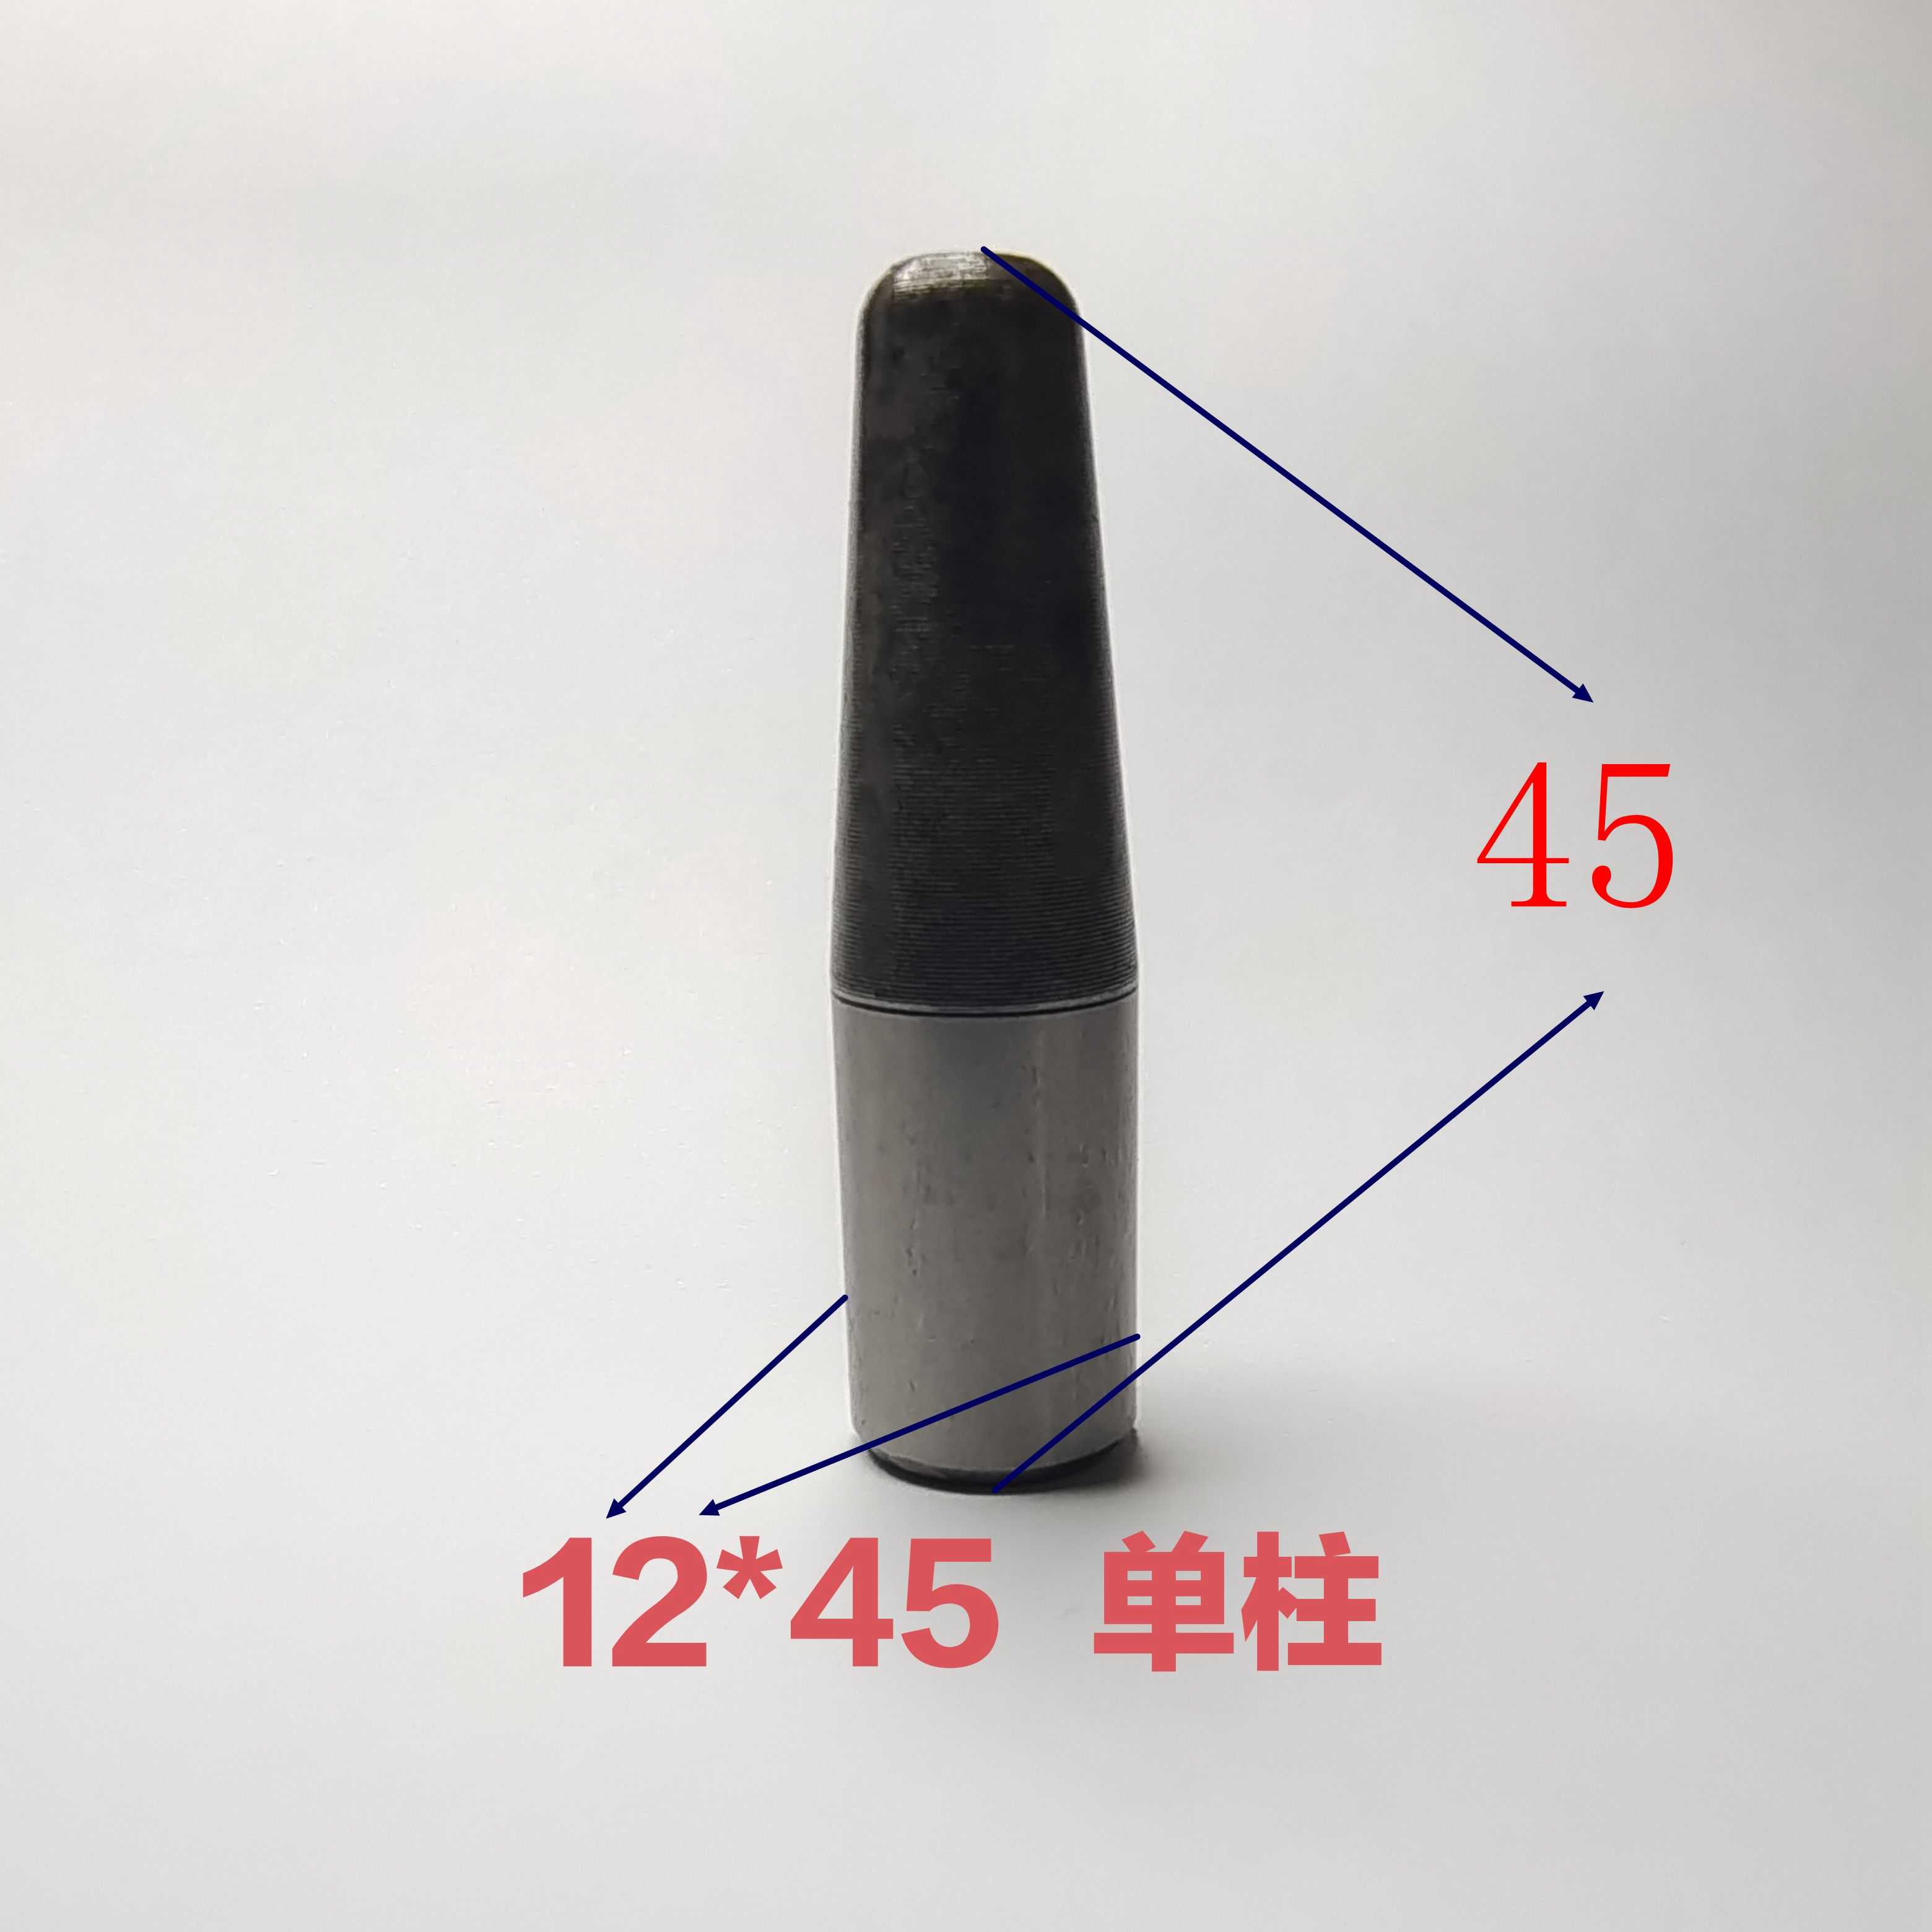 硅胶橡胶模具导柱导套单柱套配合使用定位销套材质20cr硬度58-62